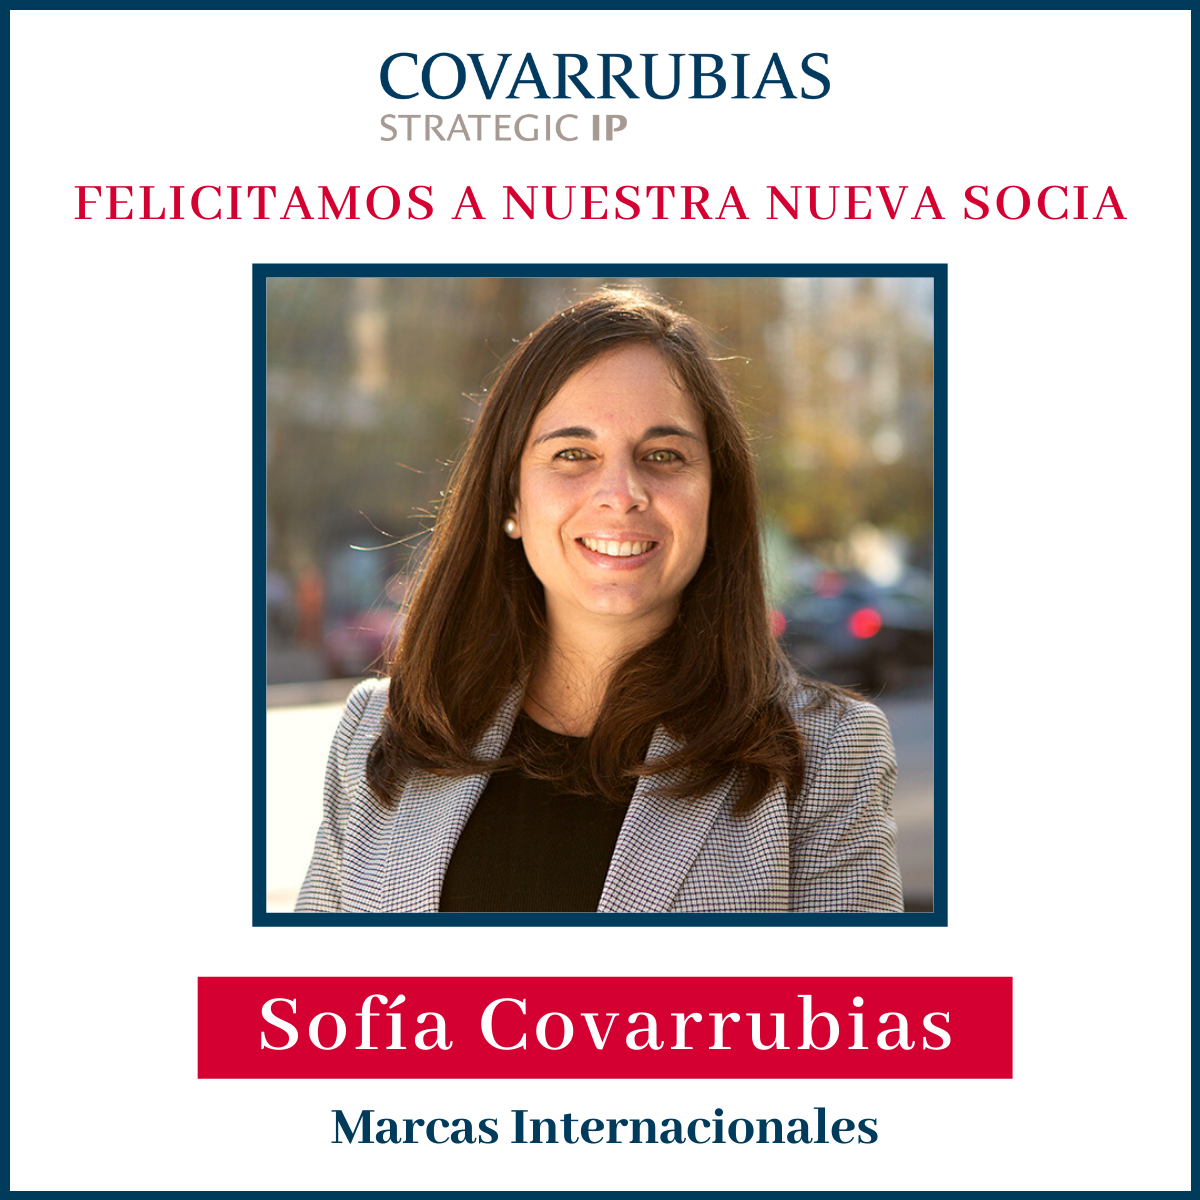 Sofía Covarrubias es nombrada socia de Covarrubias